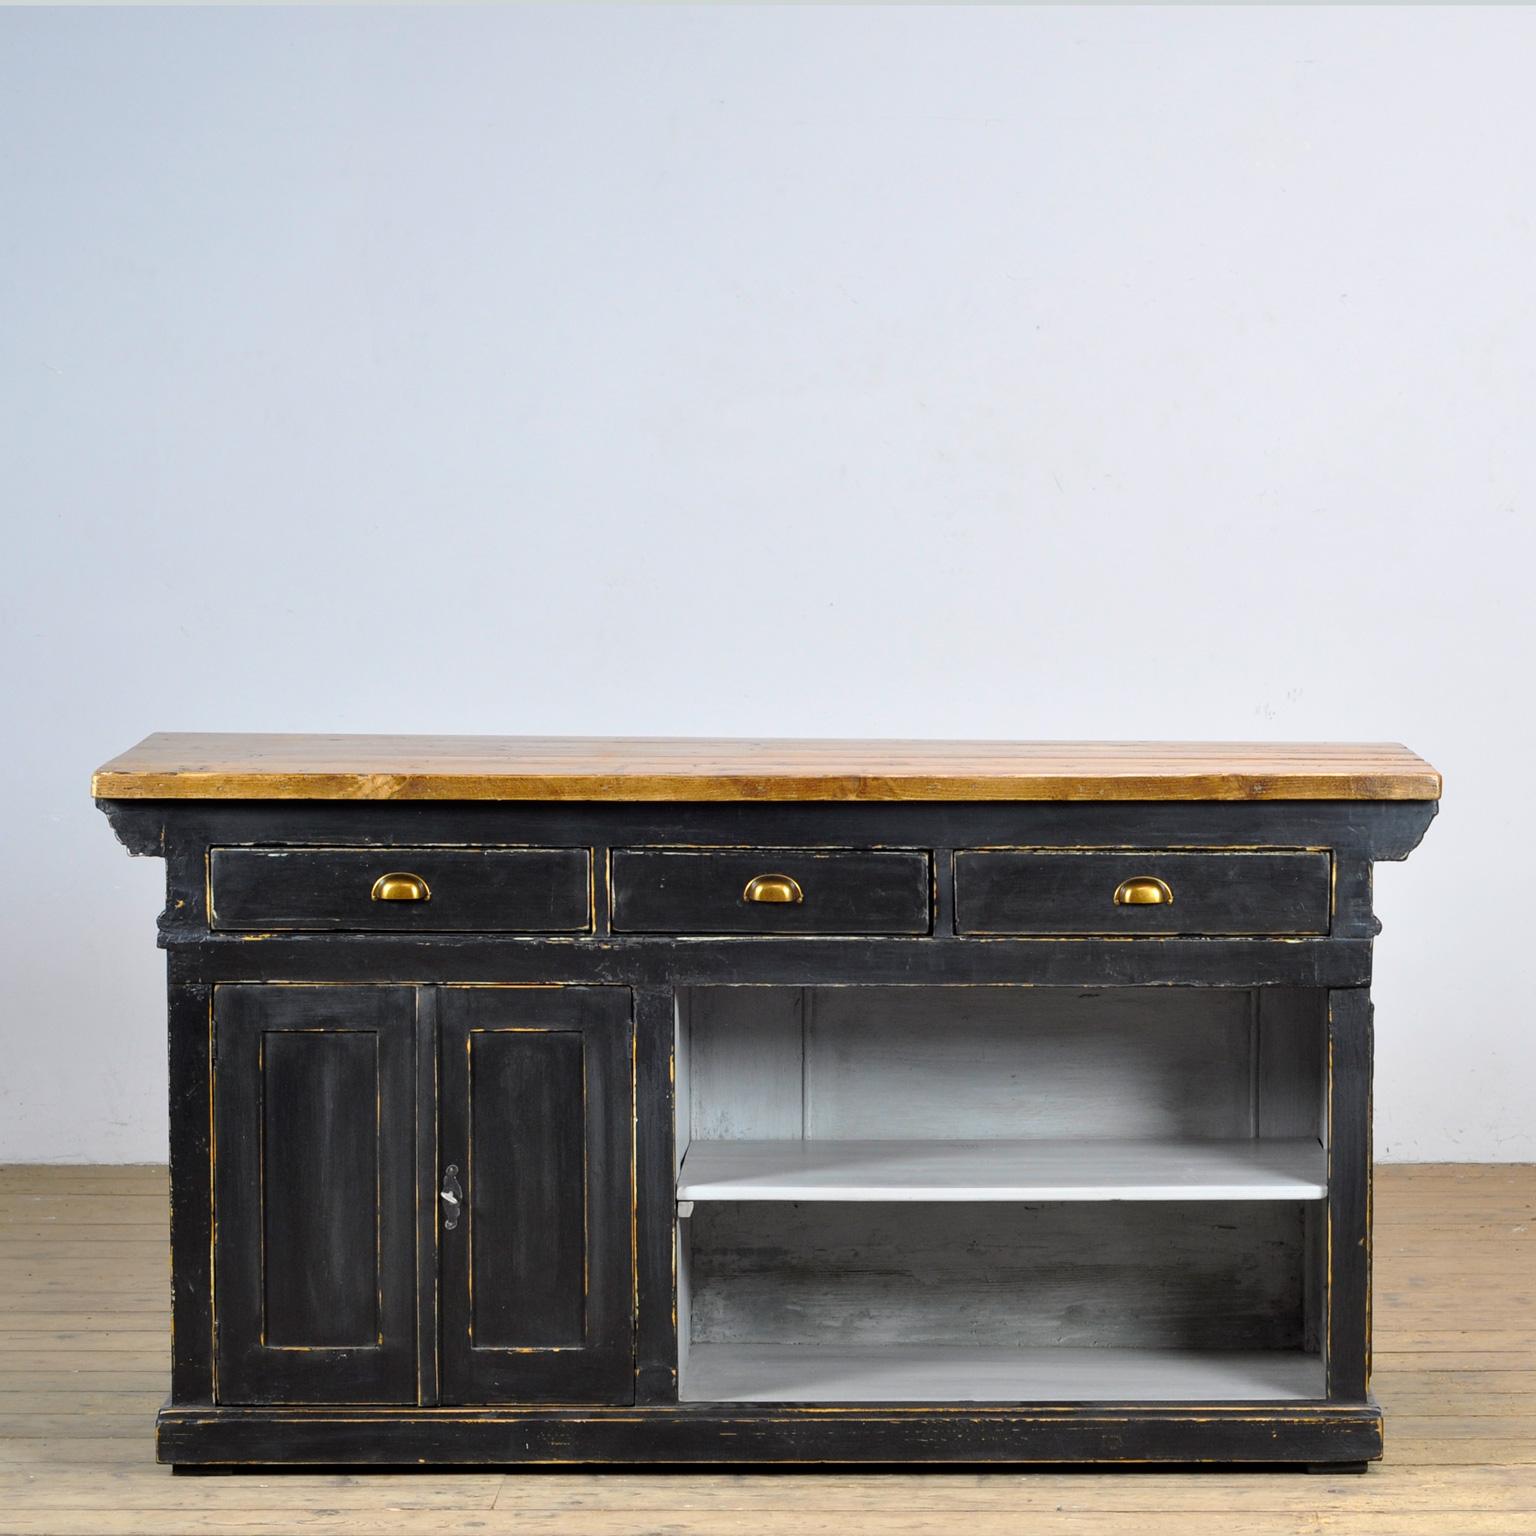 Freistehender Ladentisch aus Kiefernholz, um 1920. Die Theke hat drei Schubladen auf einer Seite mit Stauraum darunter.